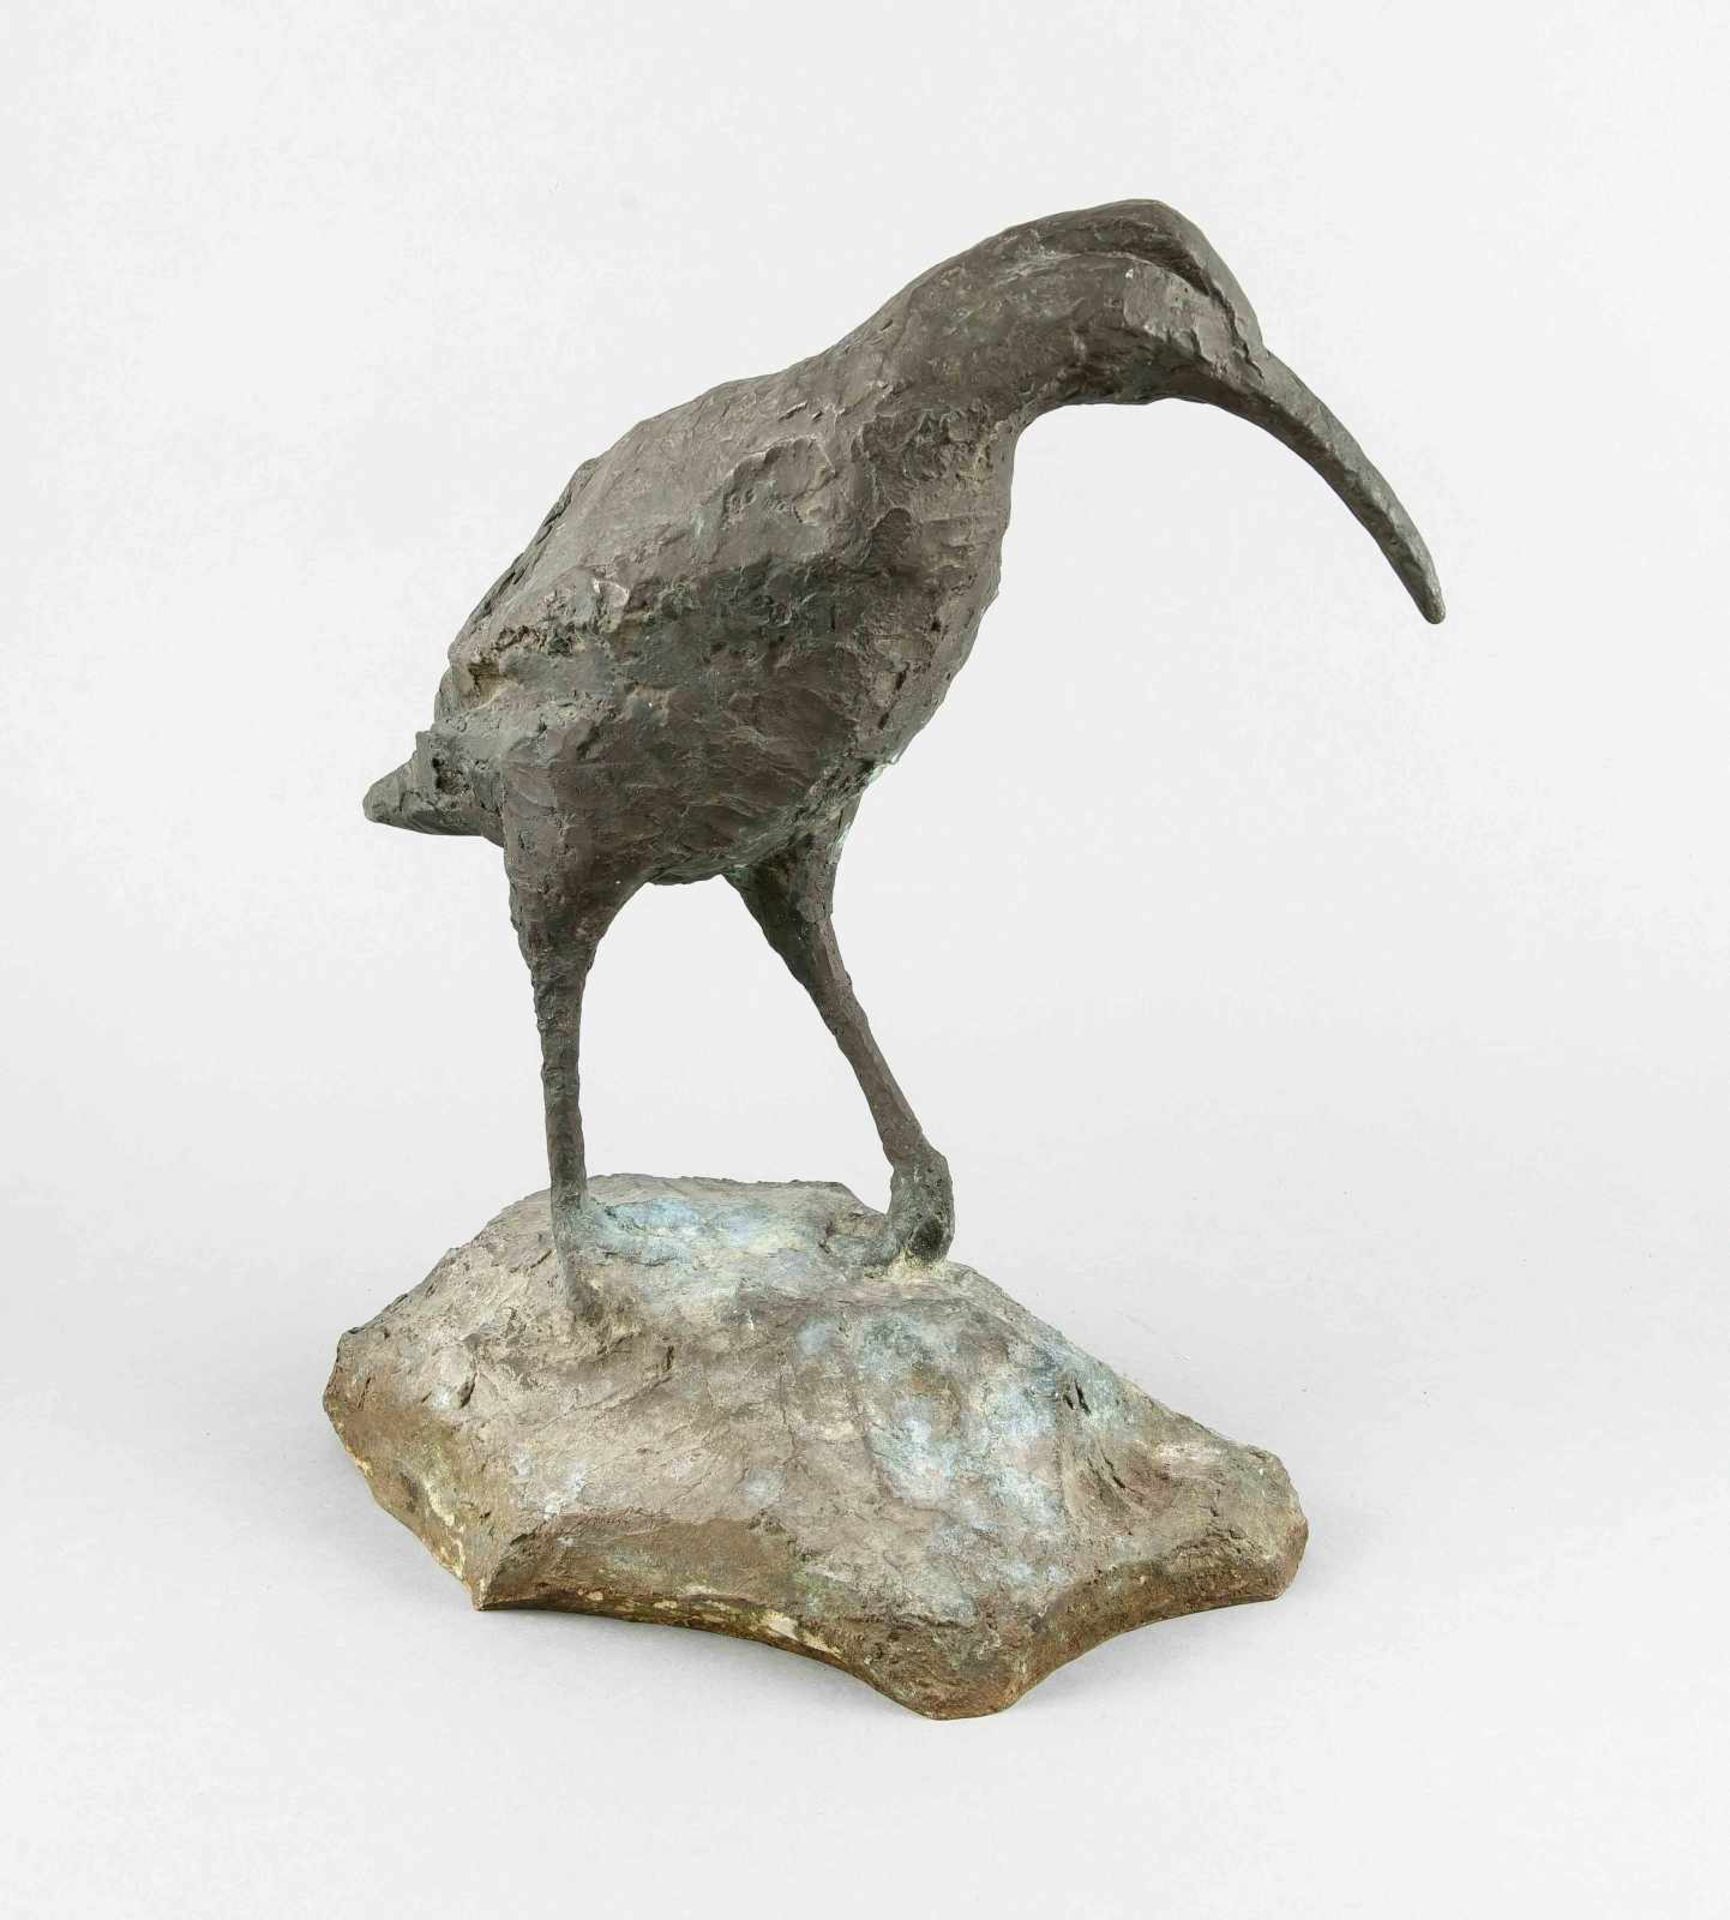 Alexander Fischer (1903-1981) (attrib.), Bildhauer in München, studierte an der Akademie ebd. bei